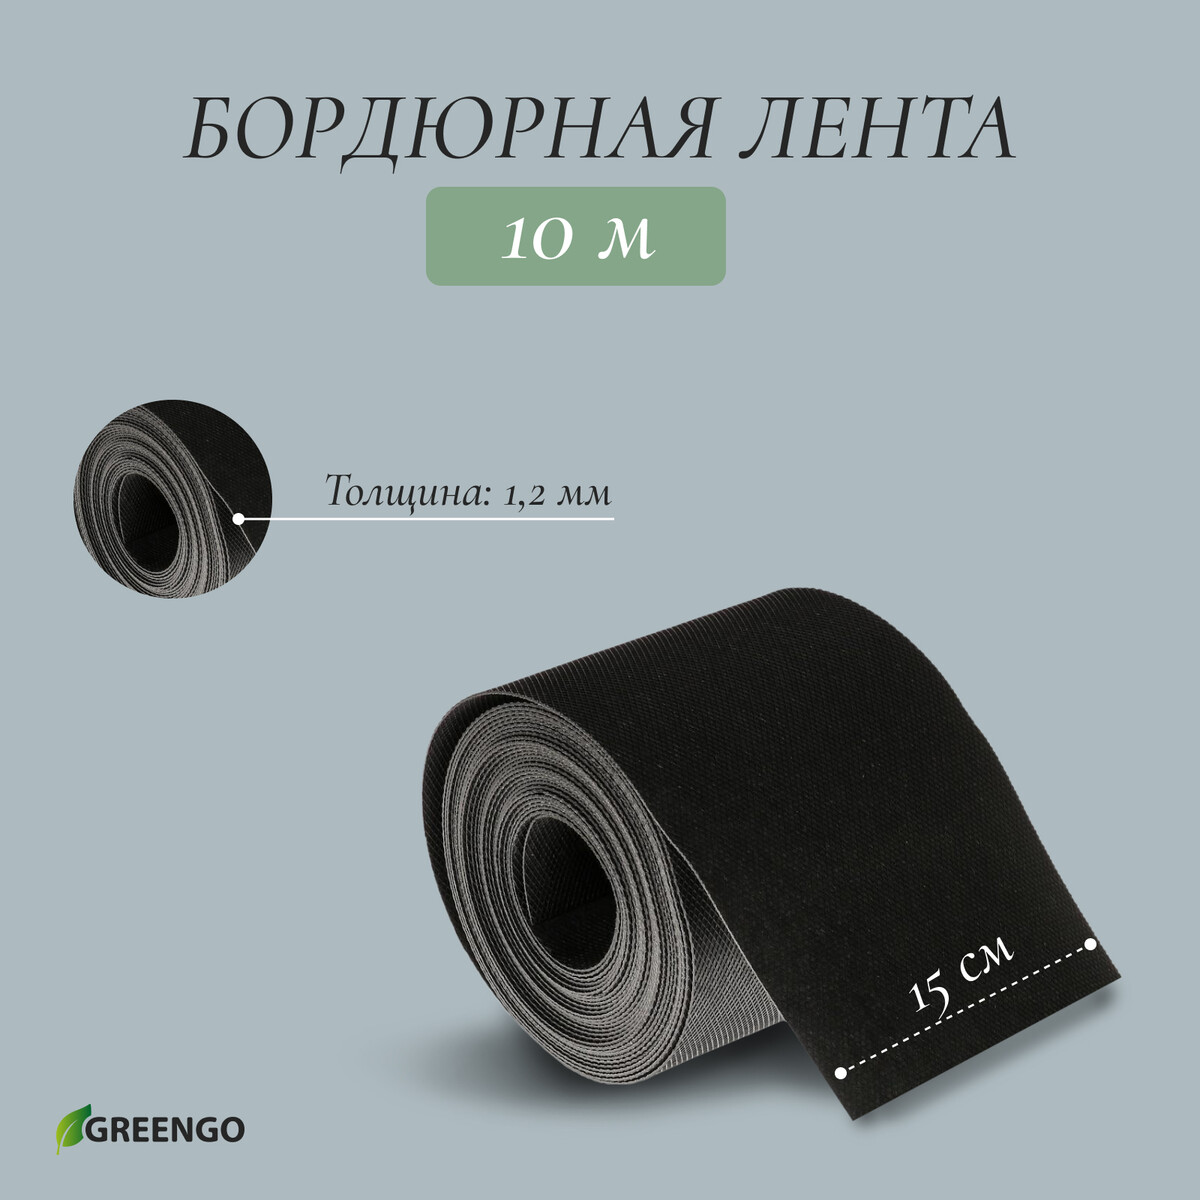 Лента бордюрная, 0.15 × 10 м, толщина 1.2 мм, пластиковая, черная, greengo